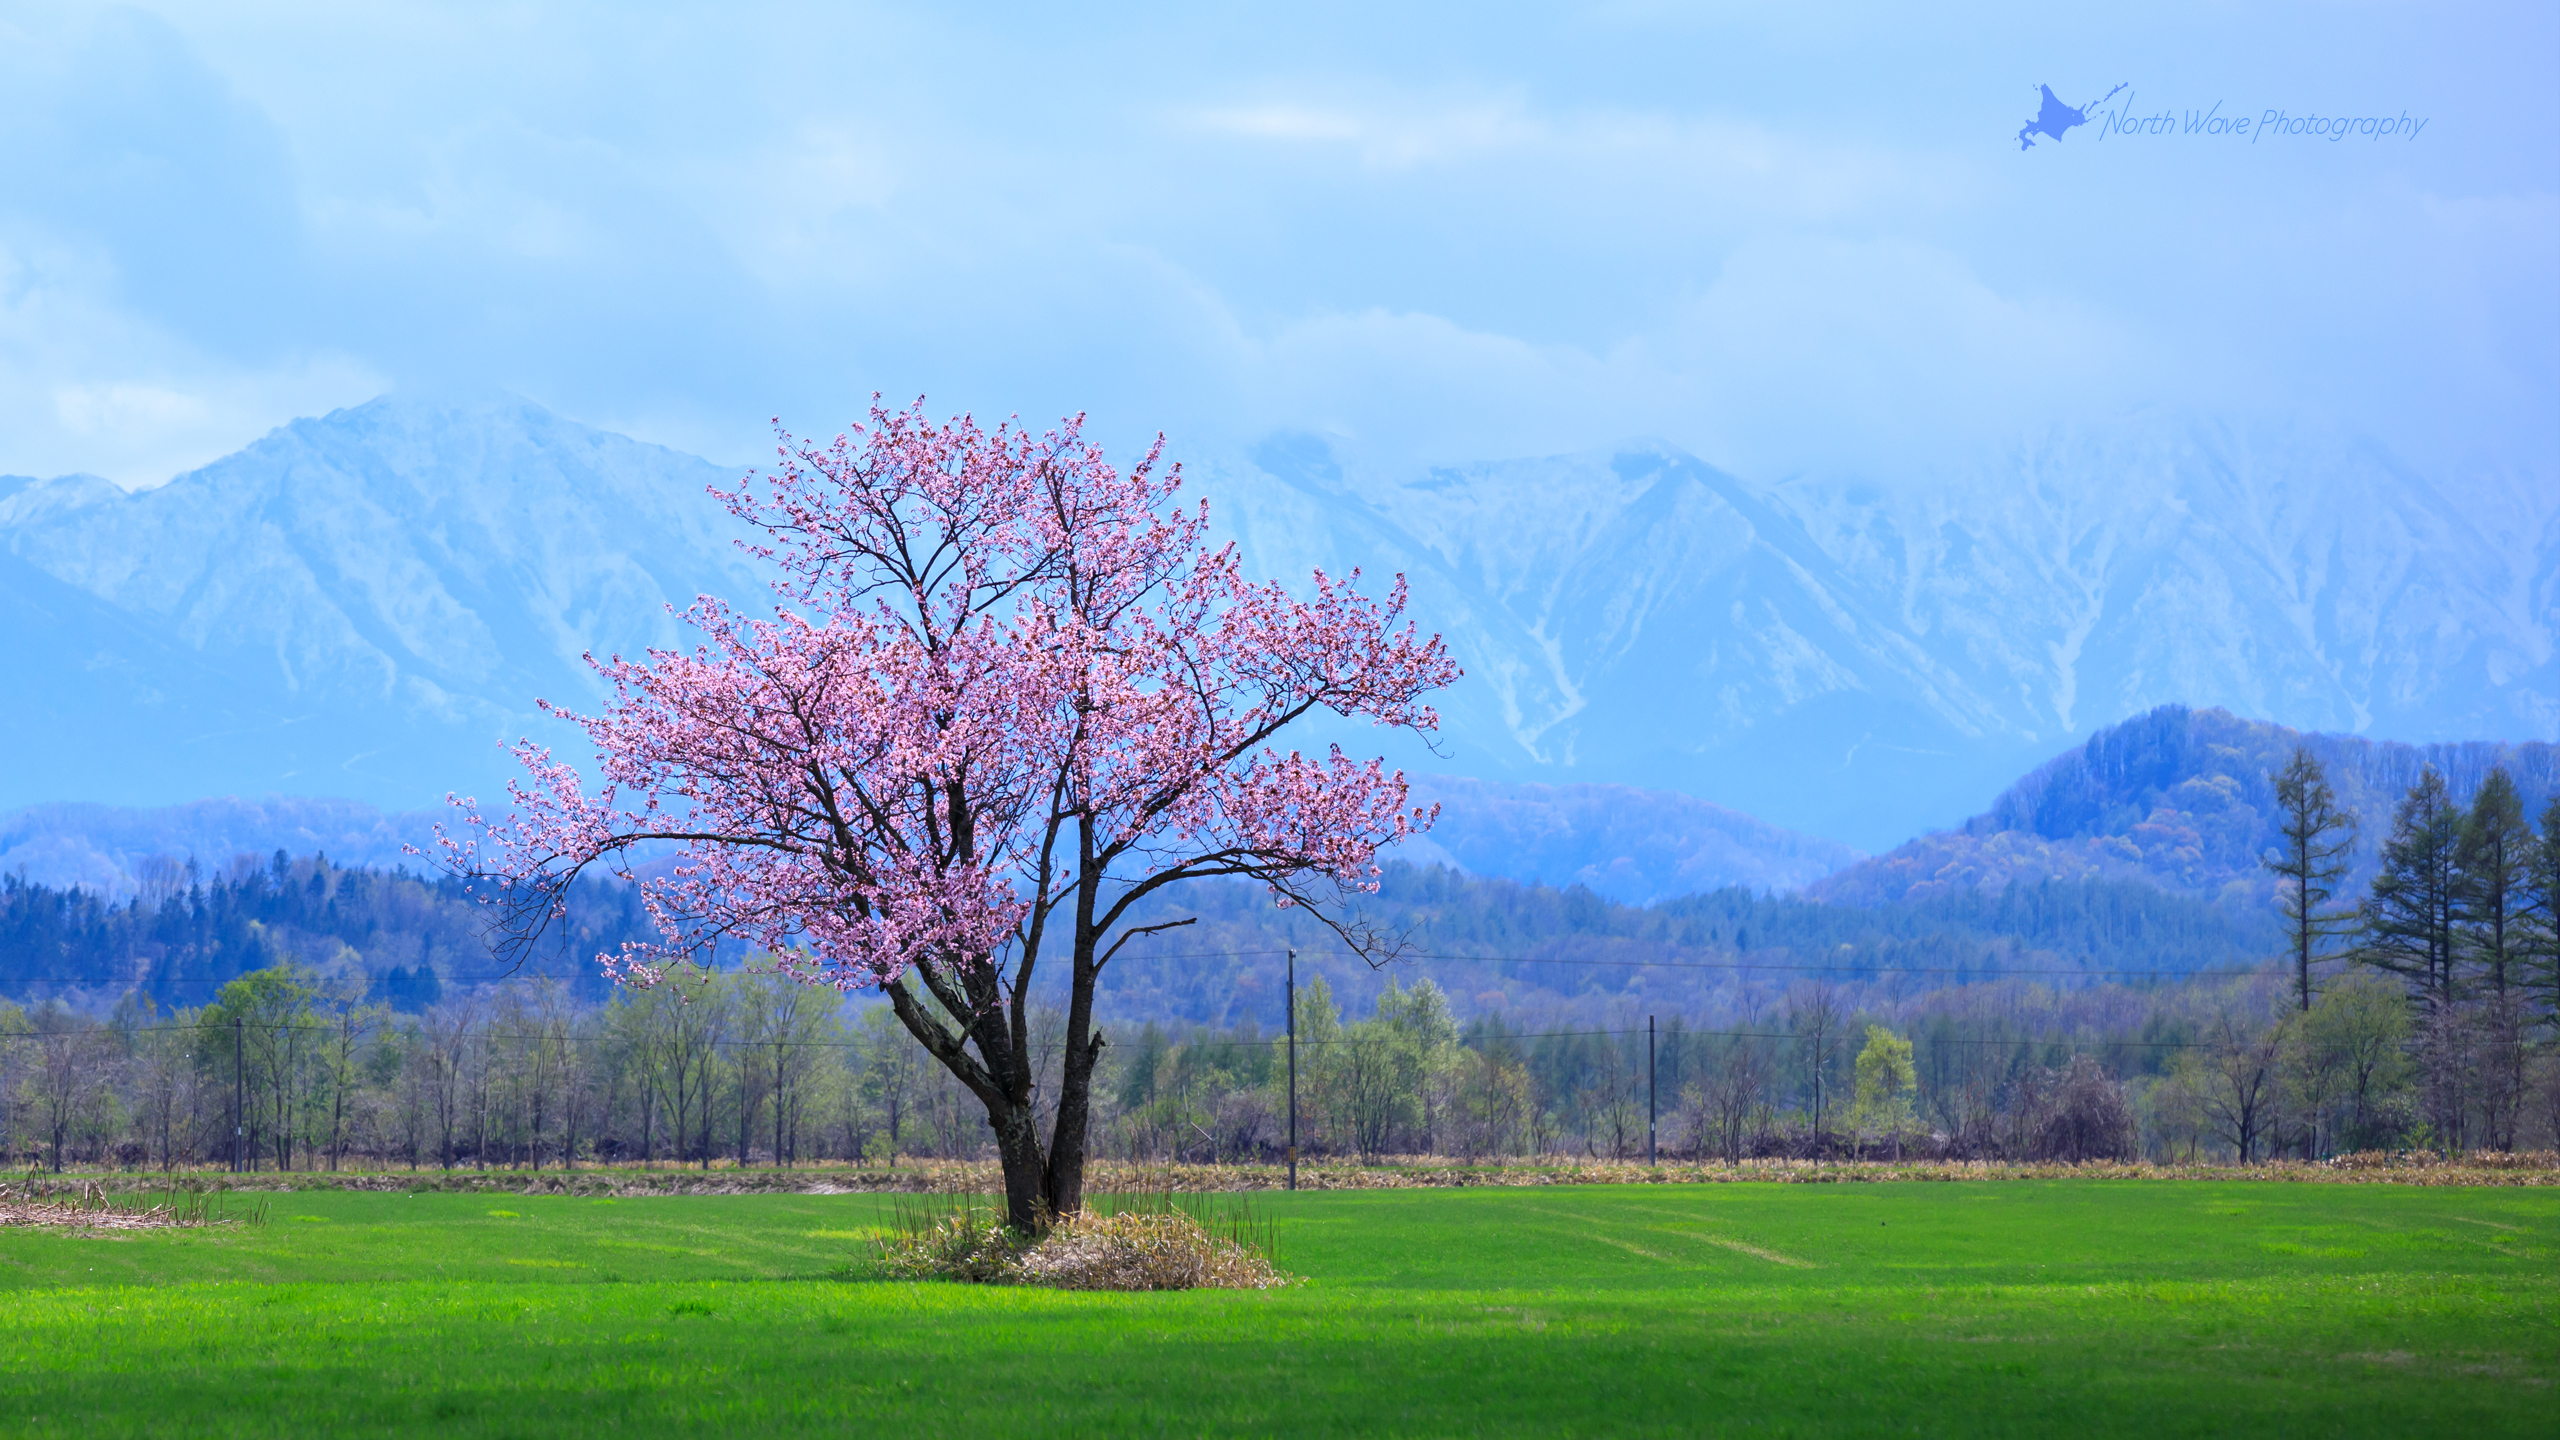 北海道の風景壁紙 一本桜と日高山脈 No 5 North Wave Photography